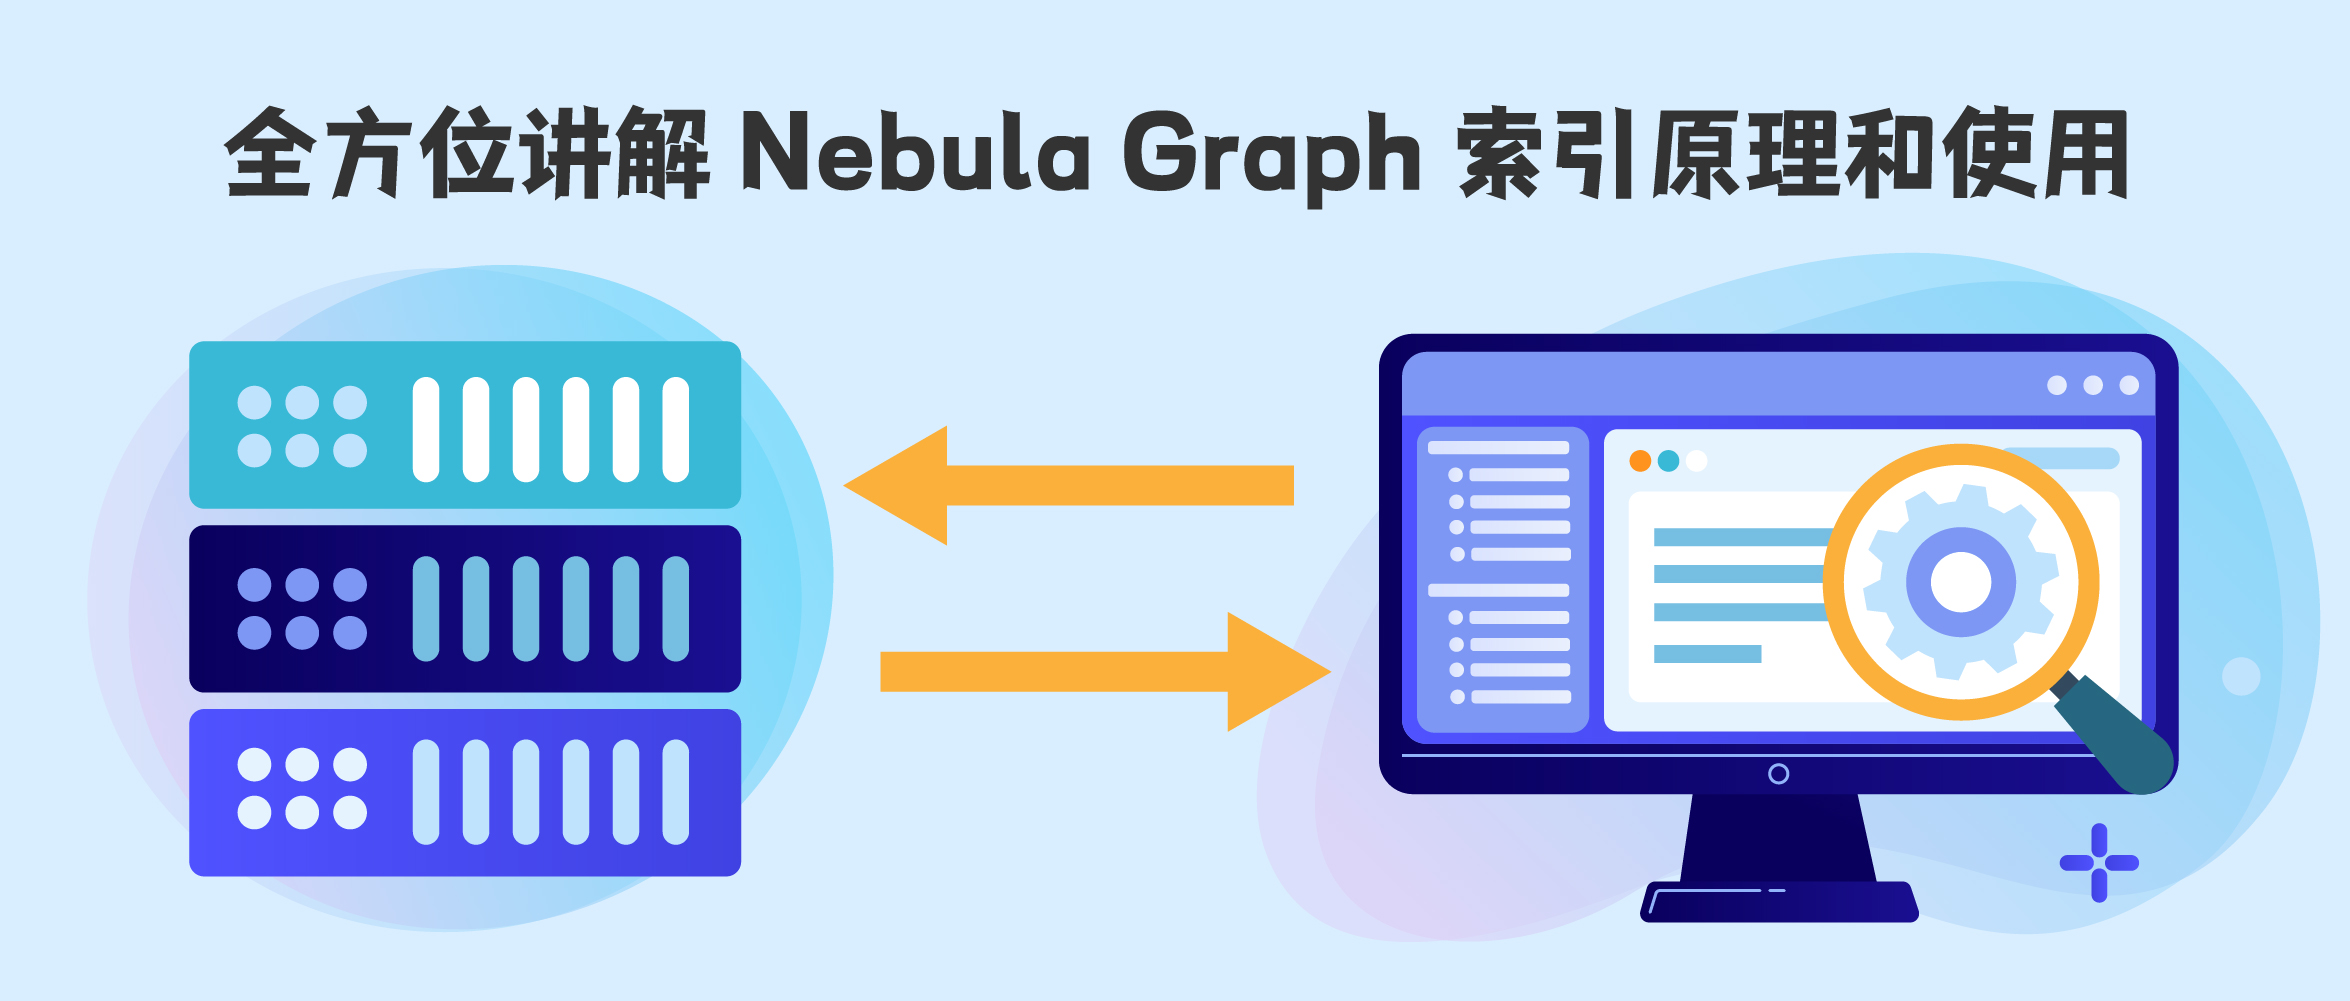 全方位講解 Nebula Graph 索引原理和使用